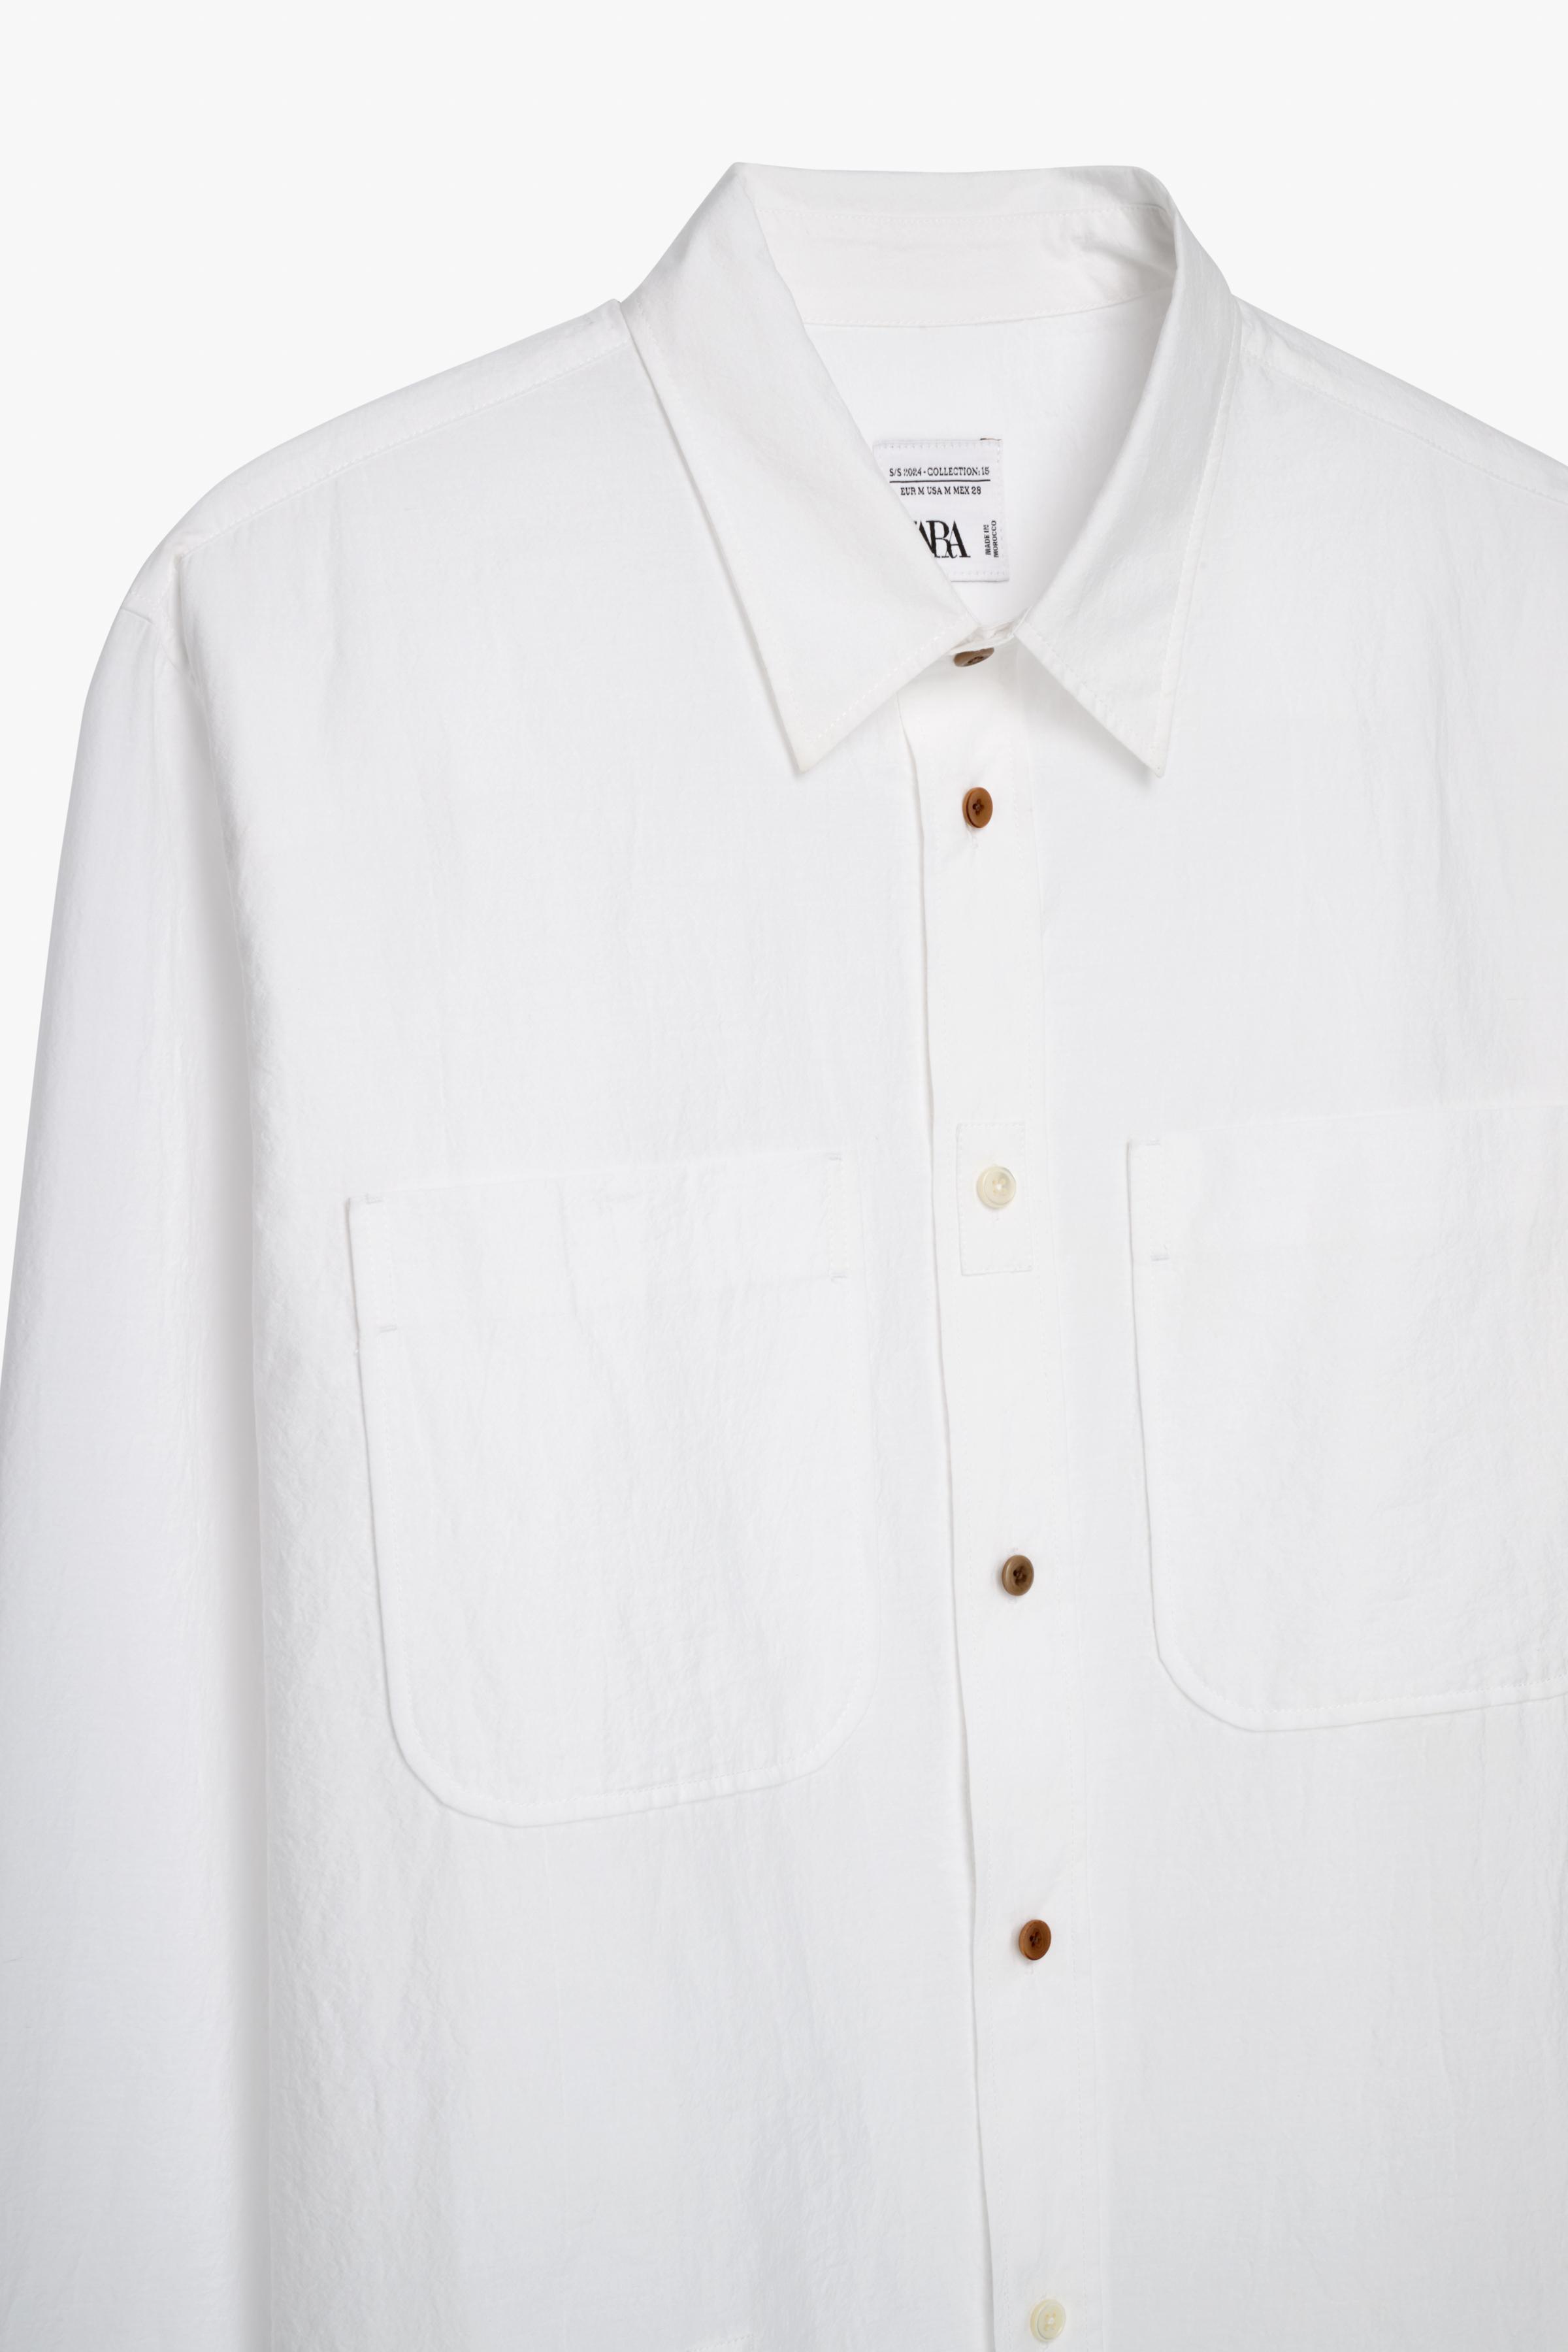 オーバーサイズシャツLIMITED EDITION - ホワイト | ZARA Japan / 日本